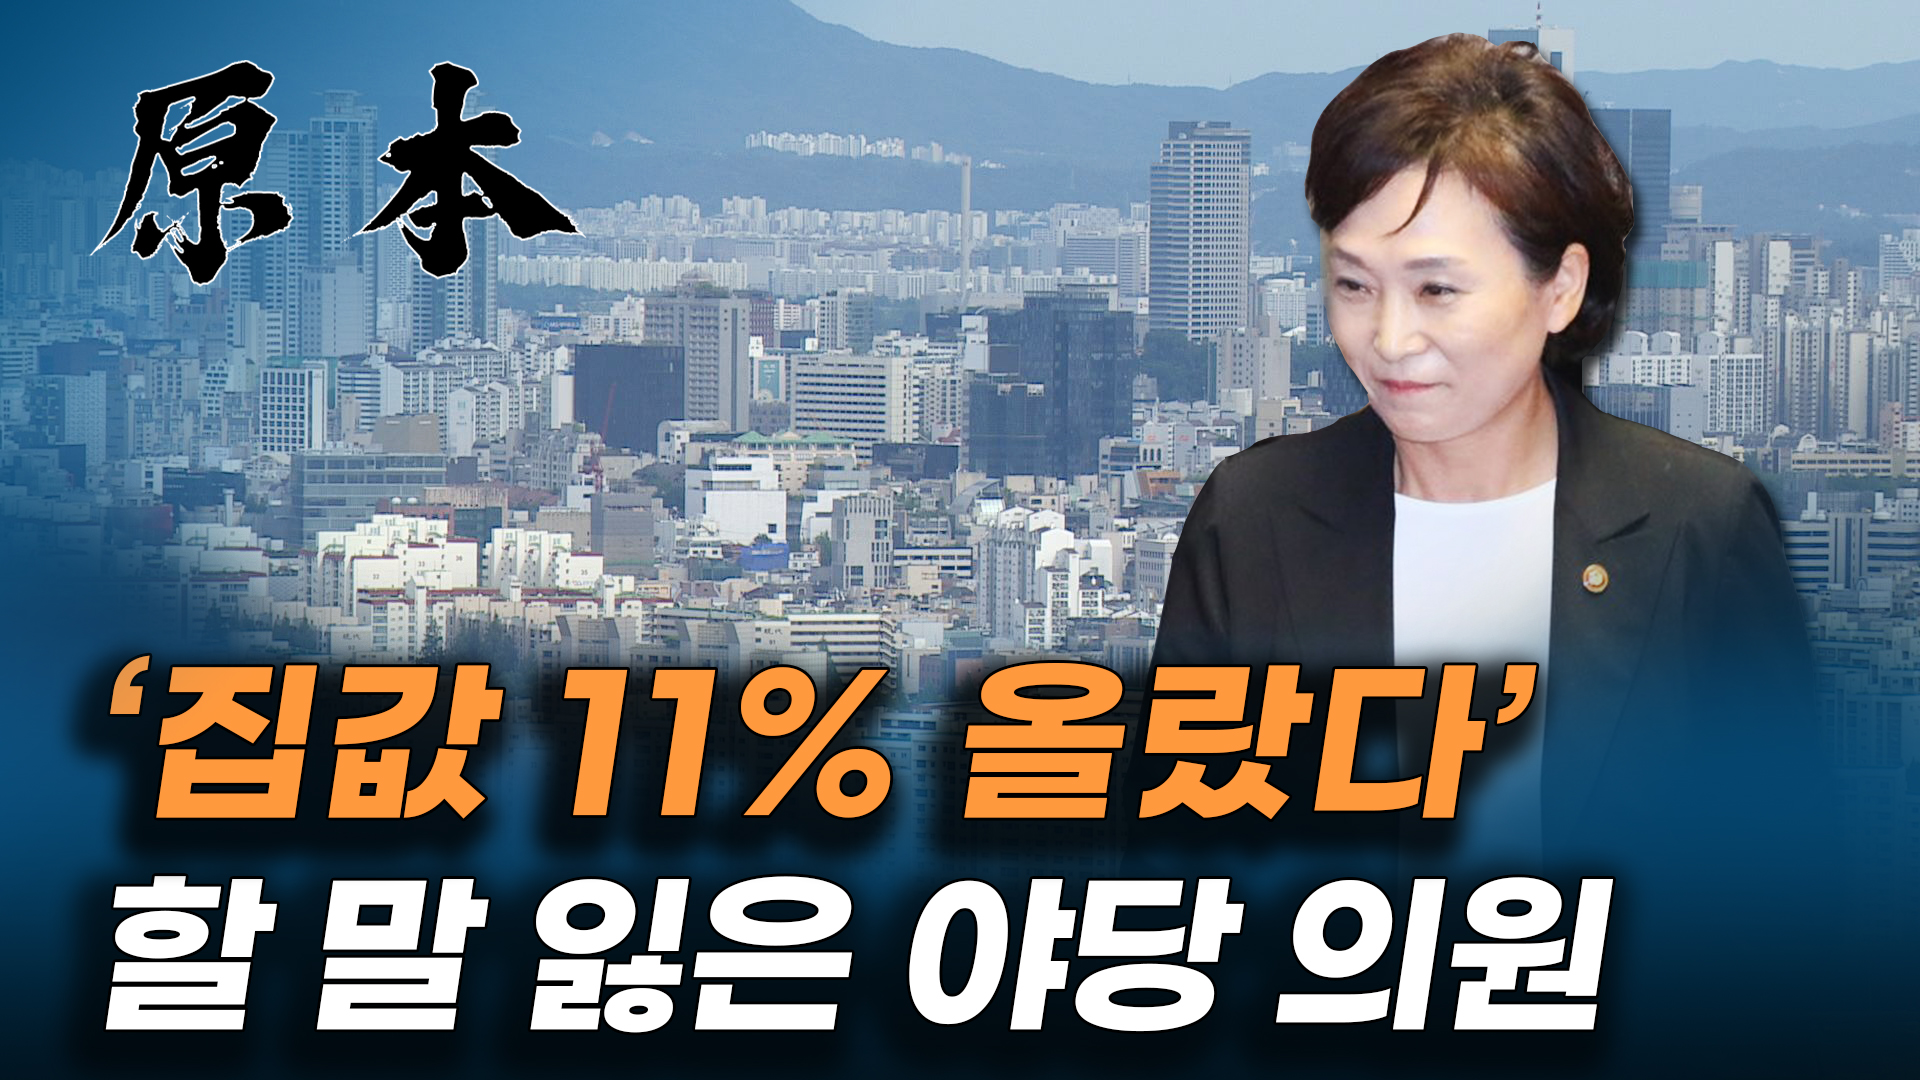 김현미 국토교통부 장관 '집값 11% 올랐다' 분노한 야당 '장난하지 마세요!' [원본] 게시글 이미지